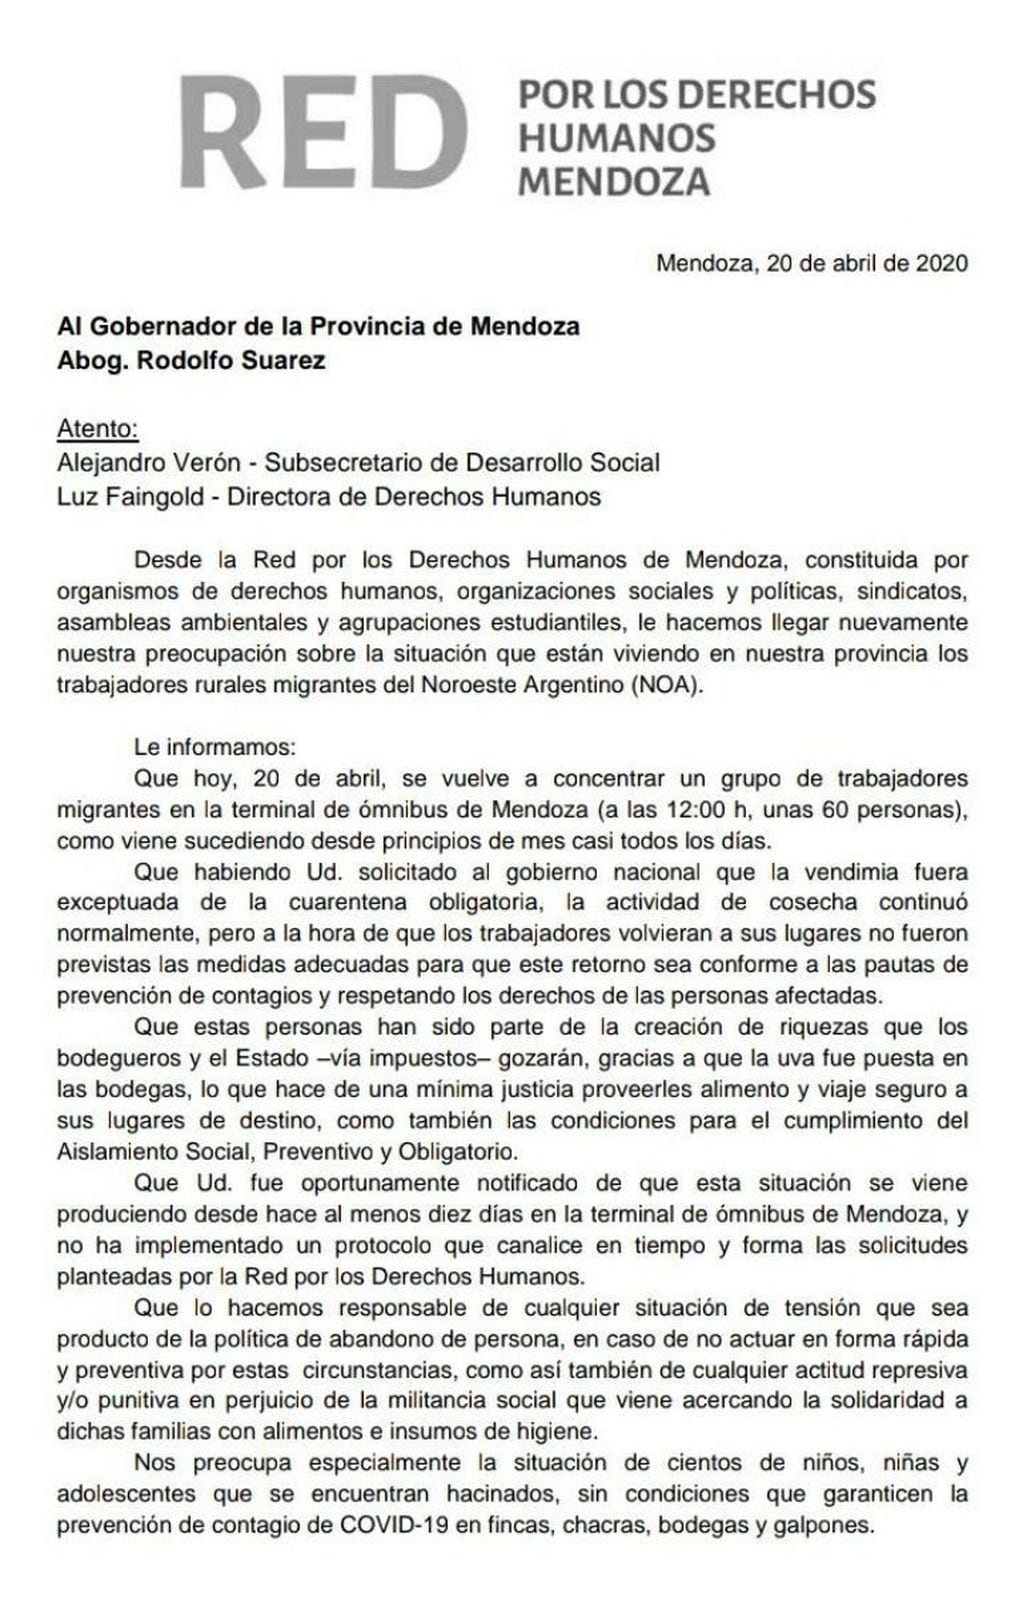 La nota de la Red por los Derechos Humanos Mendoza.